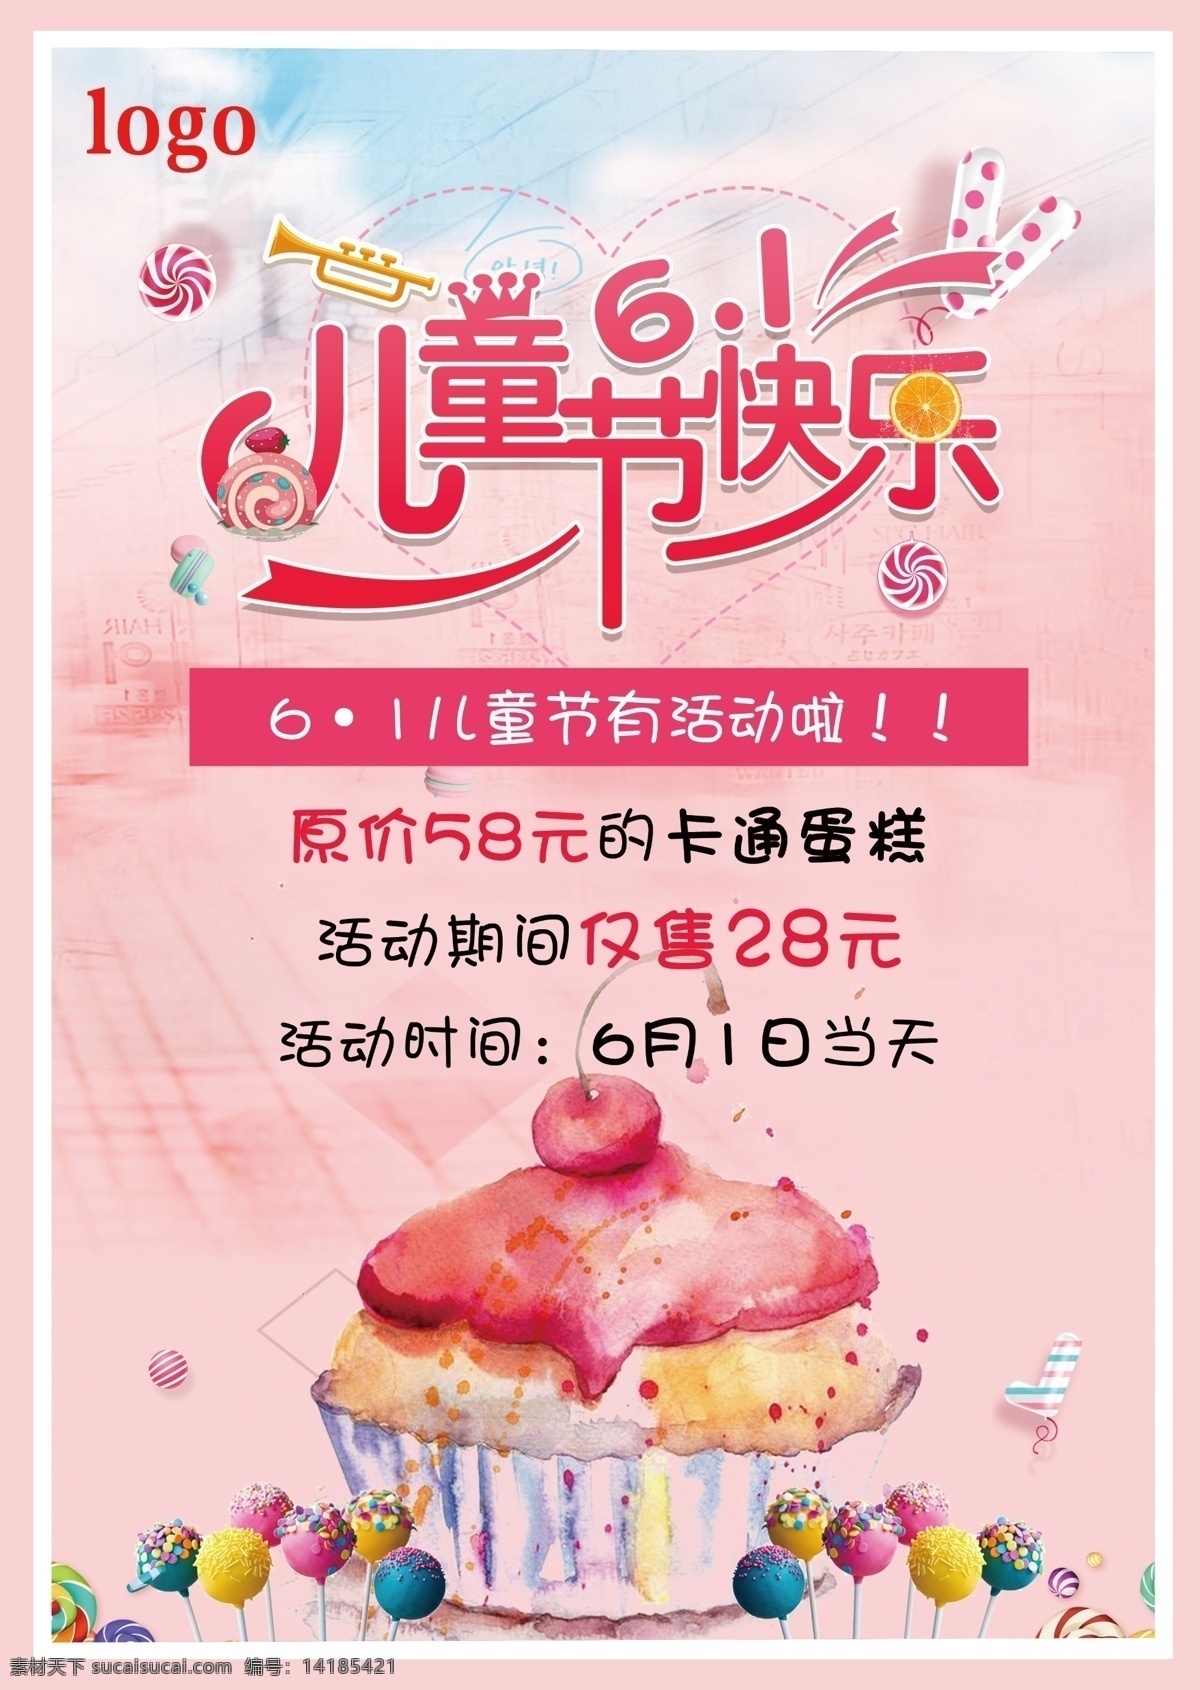 六一儿童节 蛋糕 活动 海报 蛋糕店 活动海报 促销海报